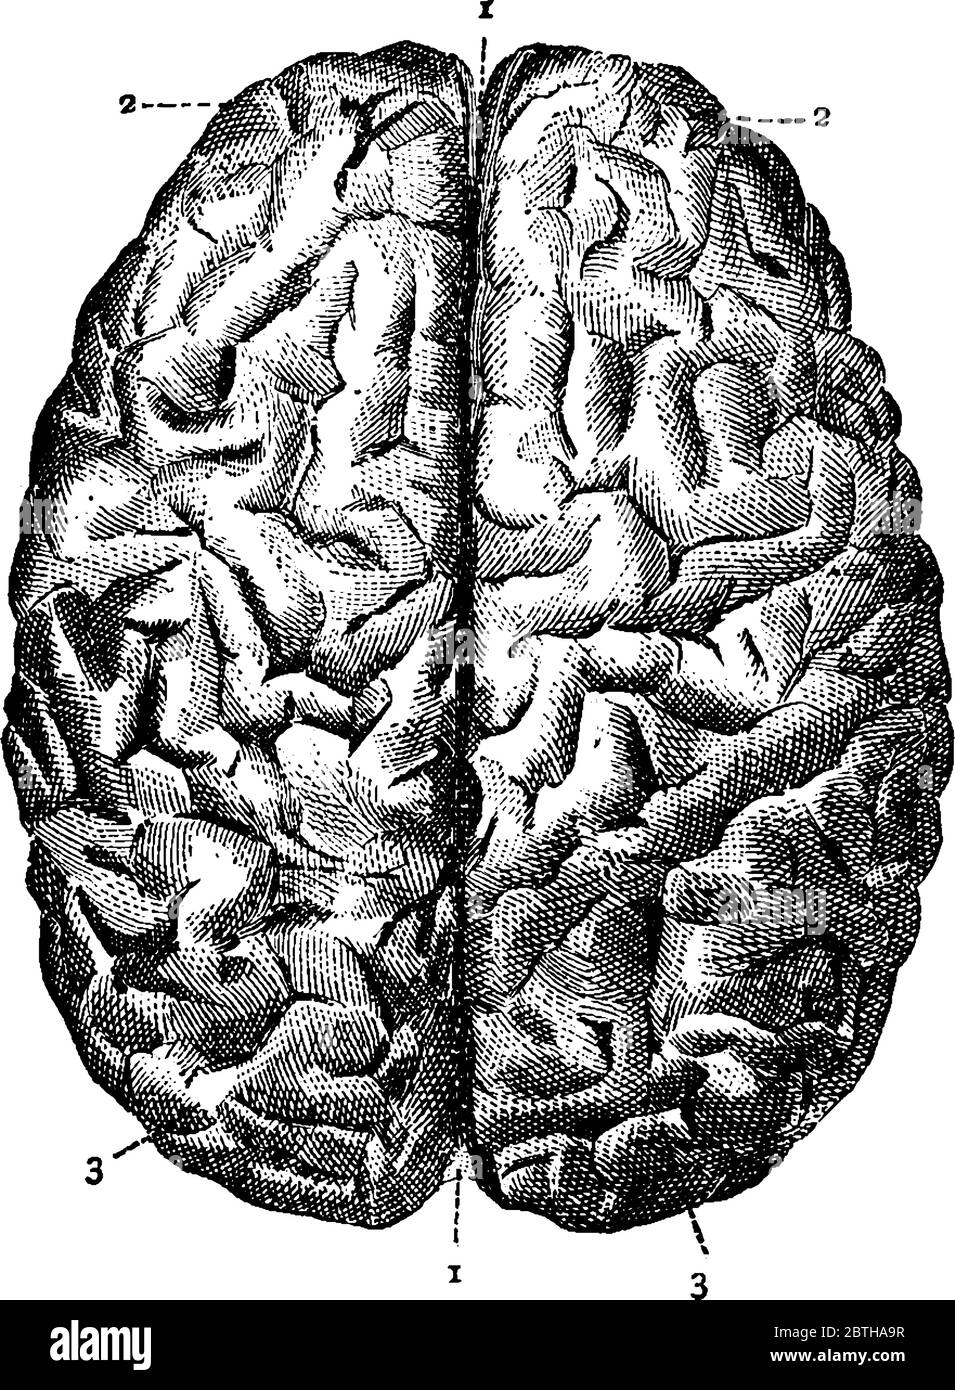 Das menschliche Gehirn von oben betrachtet, mit den Teilen gekennzeichnet als, "1, 2 und 3", die große Spalte, vordere Lappen und hintere Lappen, respecti darstellen Stock Vektor